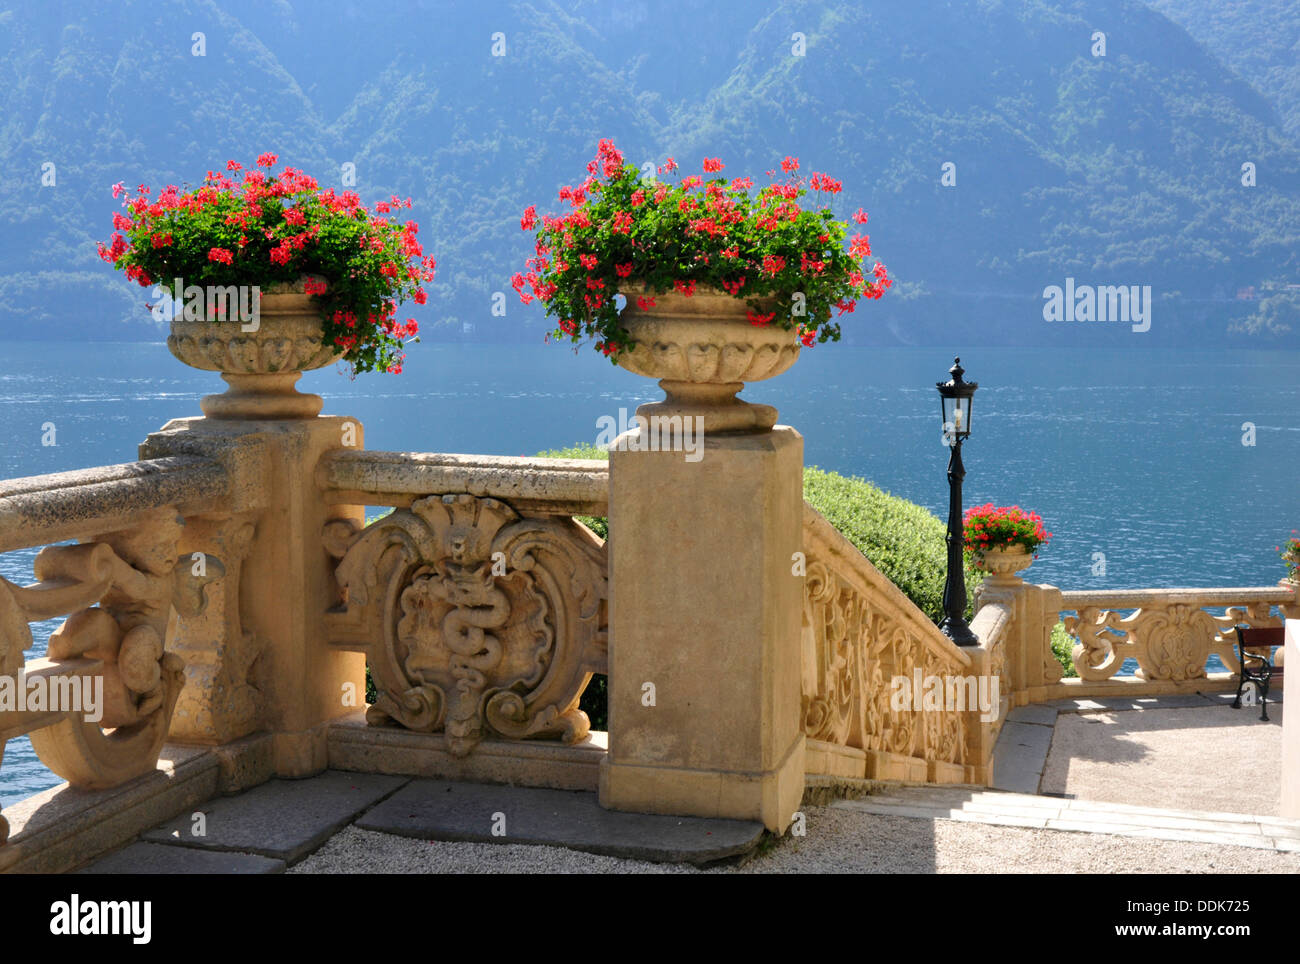 Italia - Lago di Como - Lenno - Villa Balbianello - terrazza - decorative scolpite balaustra - fiori ornamentali - lago di sfondo Foto Stock